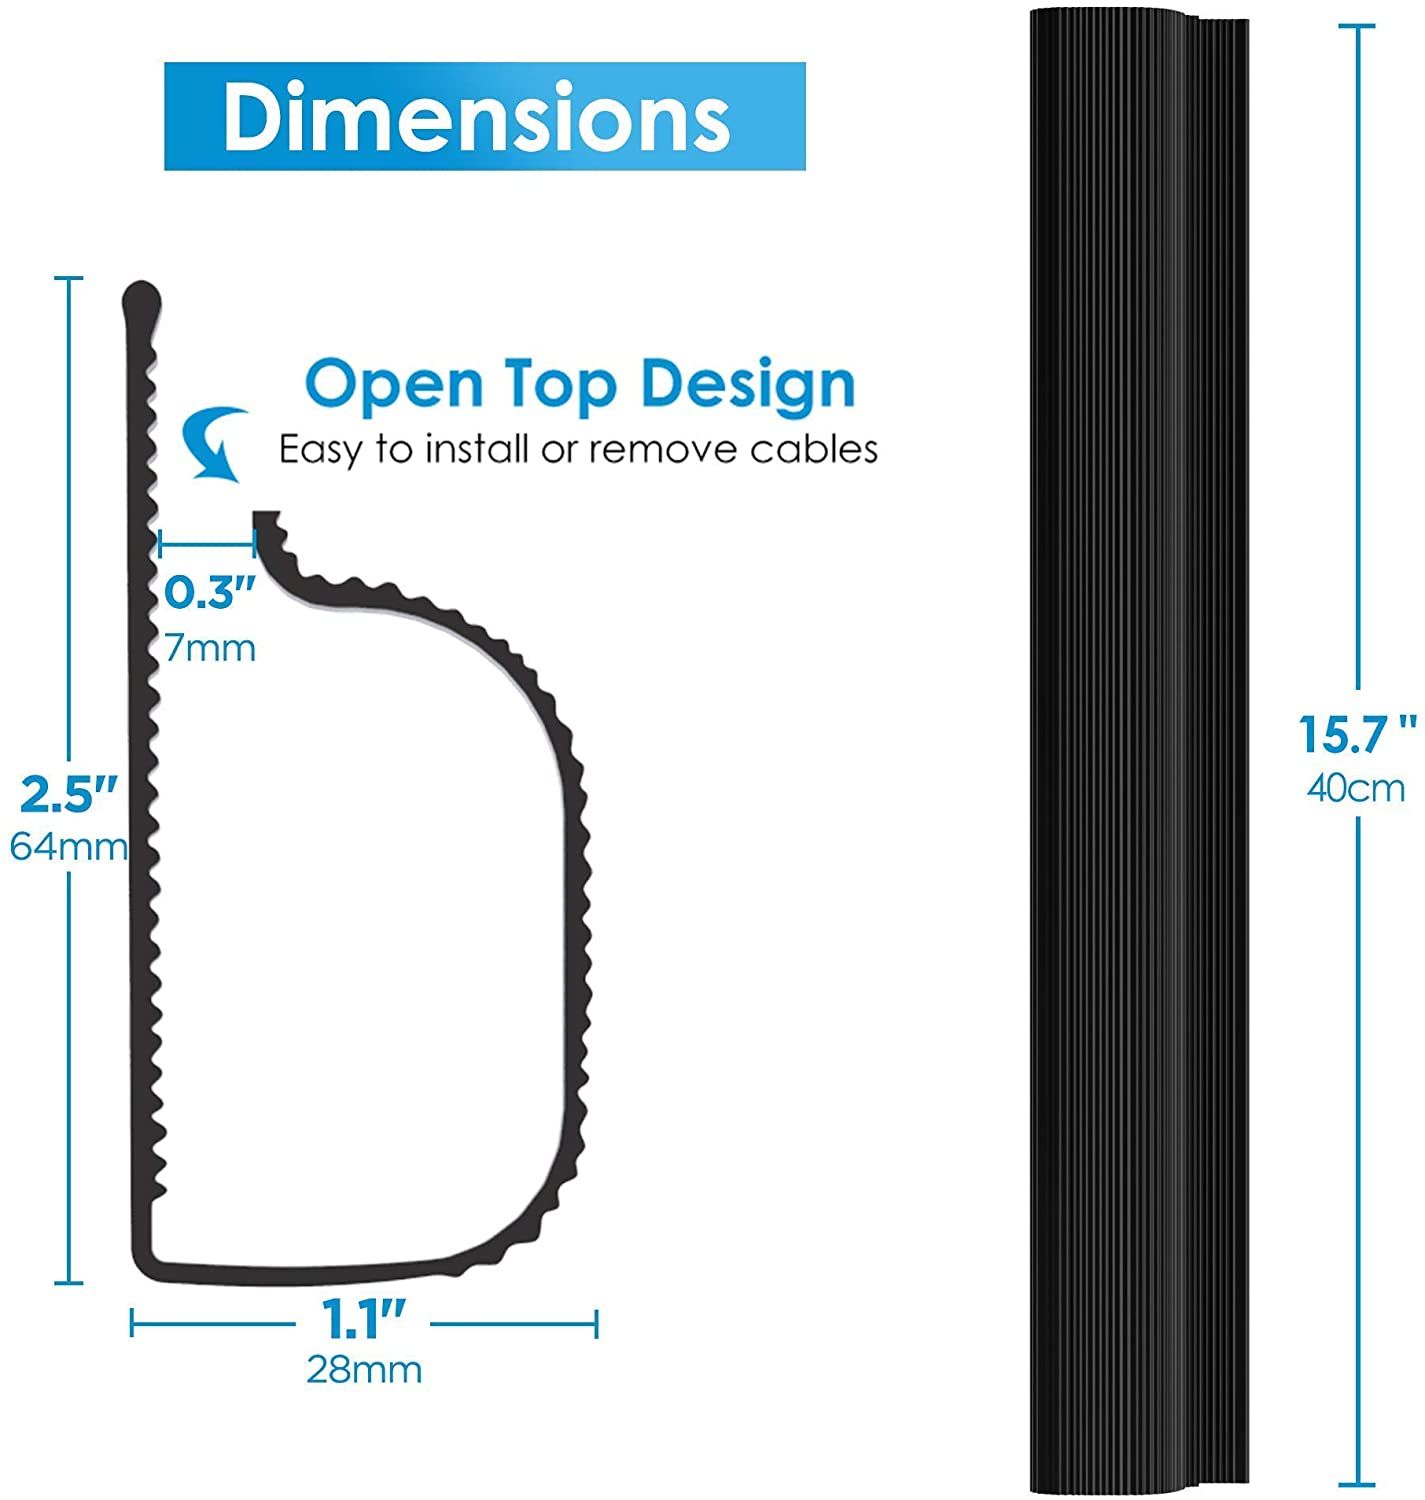 J Channel Cable Raceway Kit dimensions